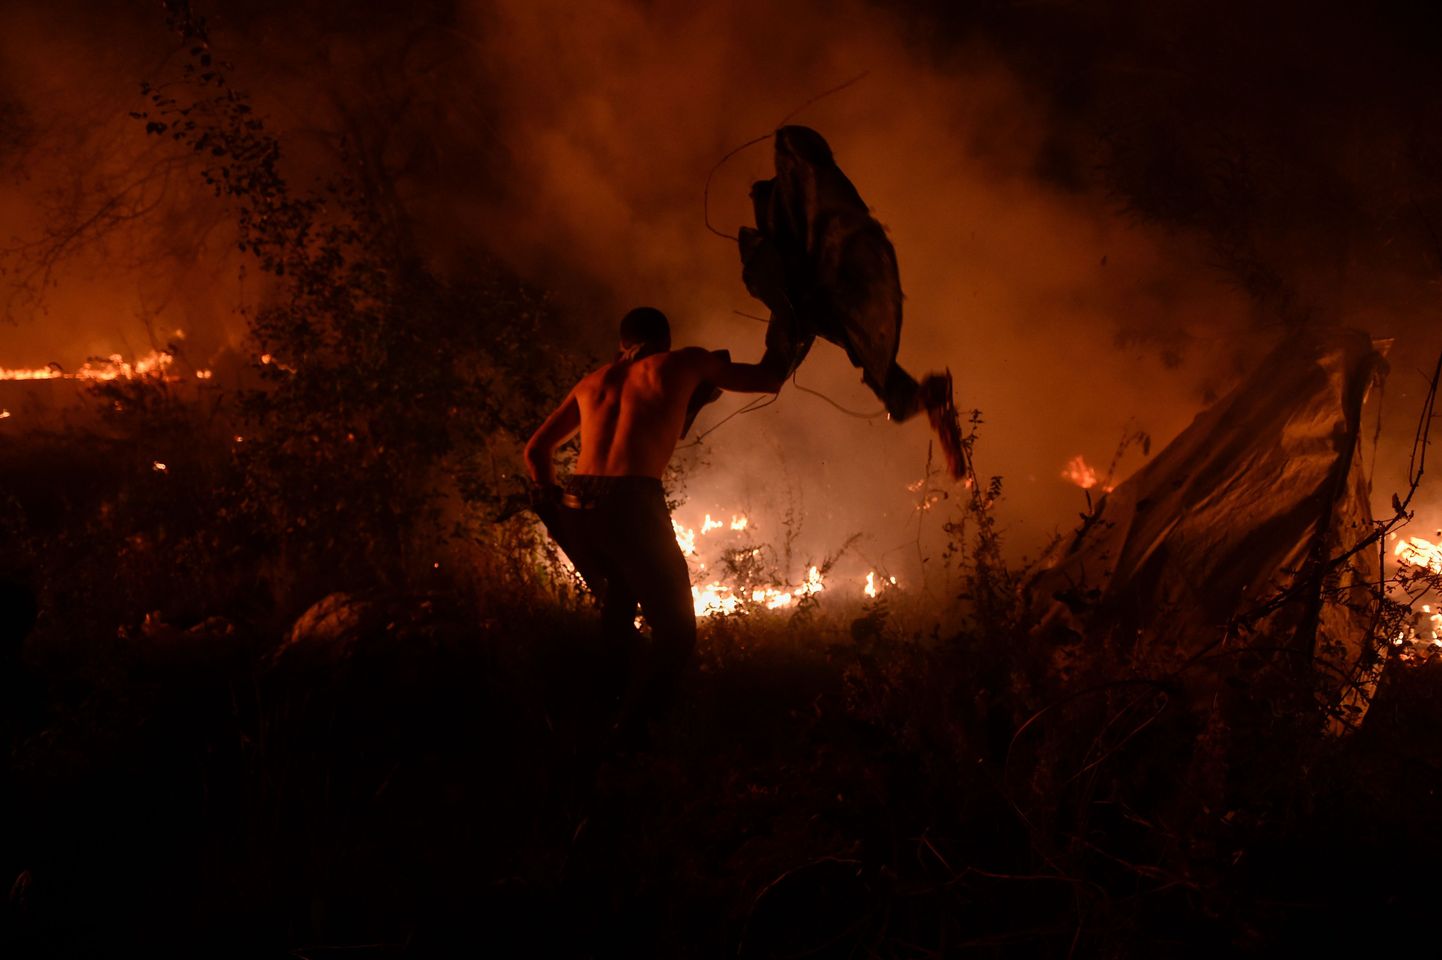 Sajad tuletõrjujad ja linnaelanikud võitlevad põlenguga Vigos.